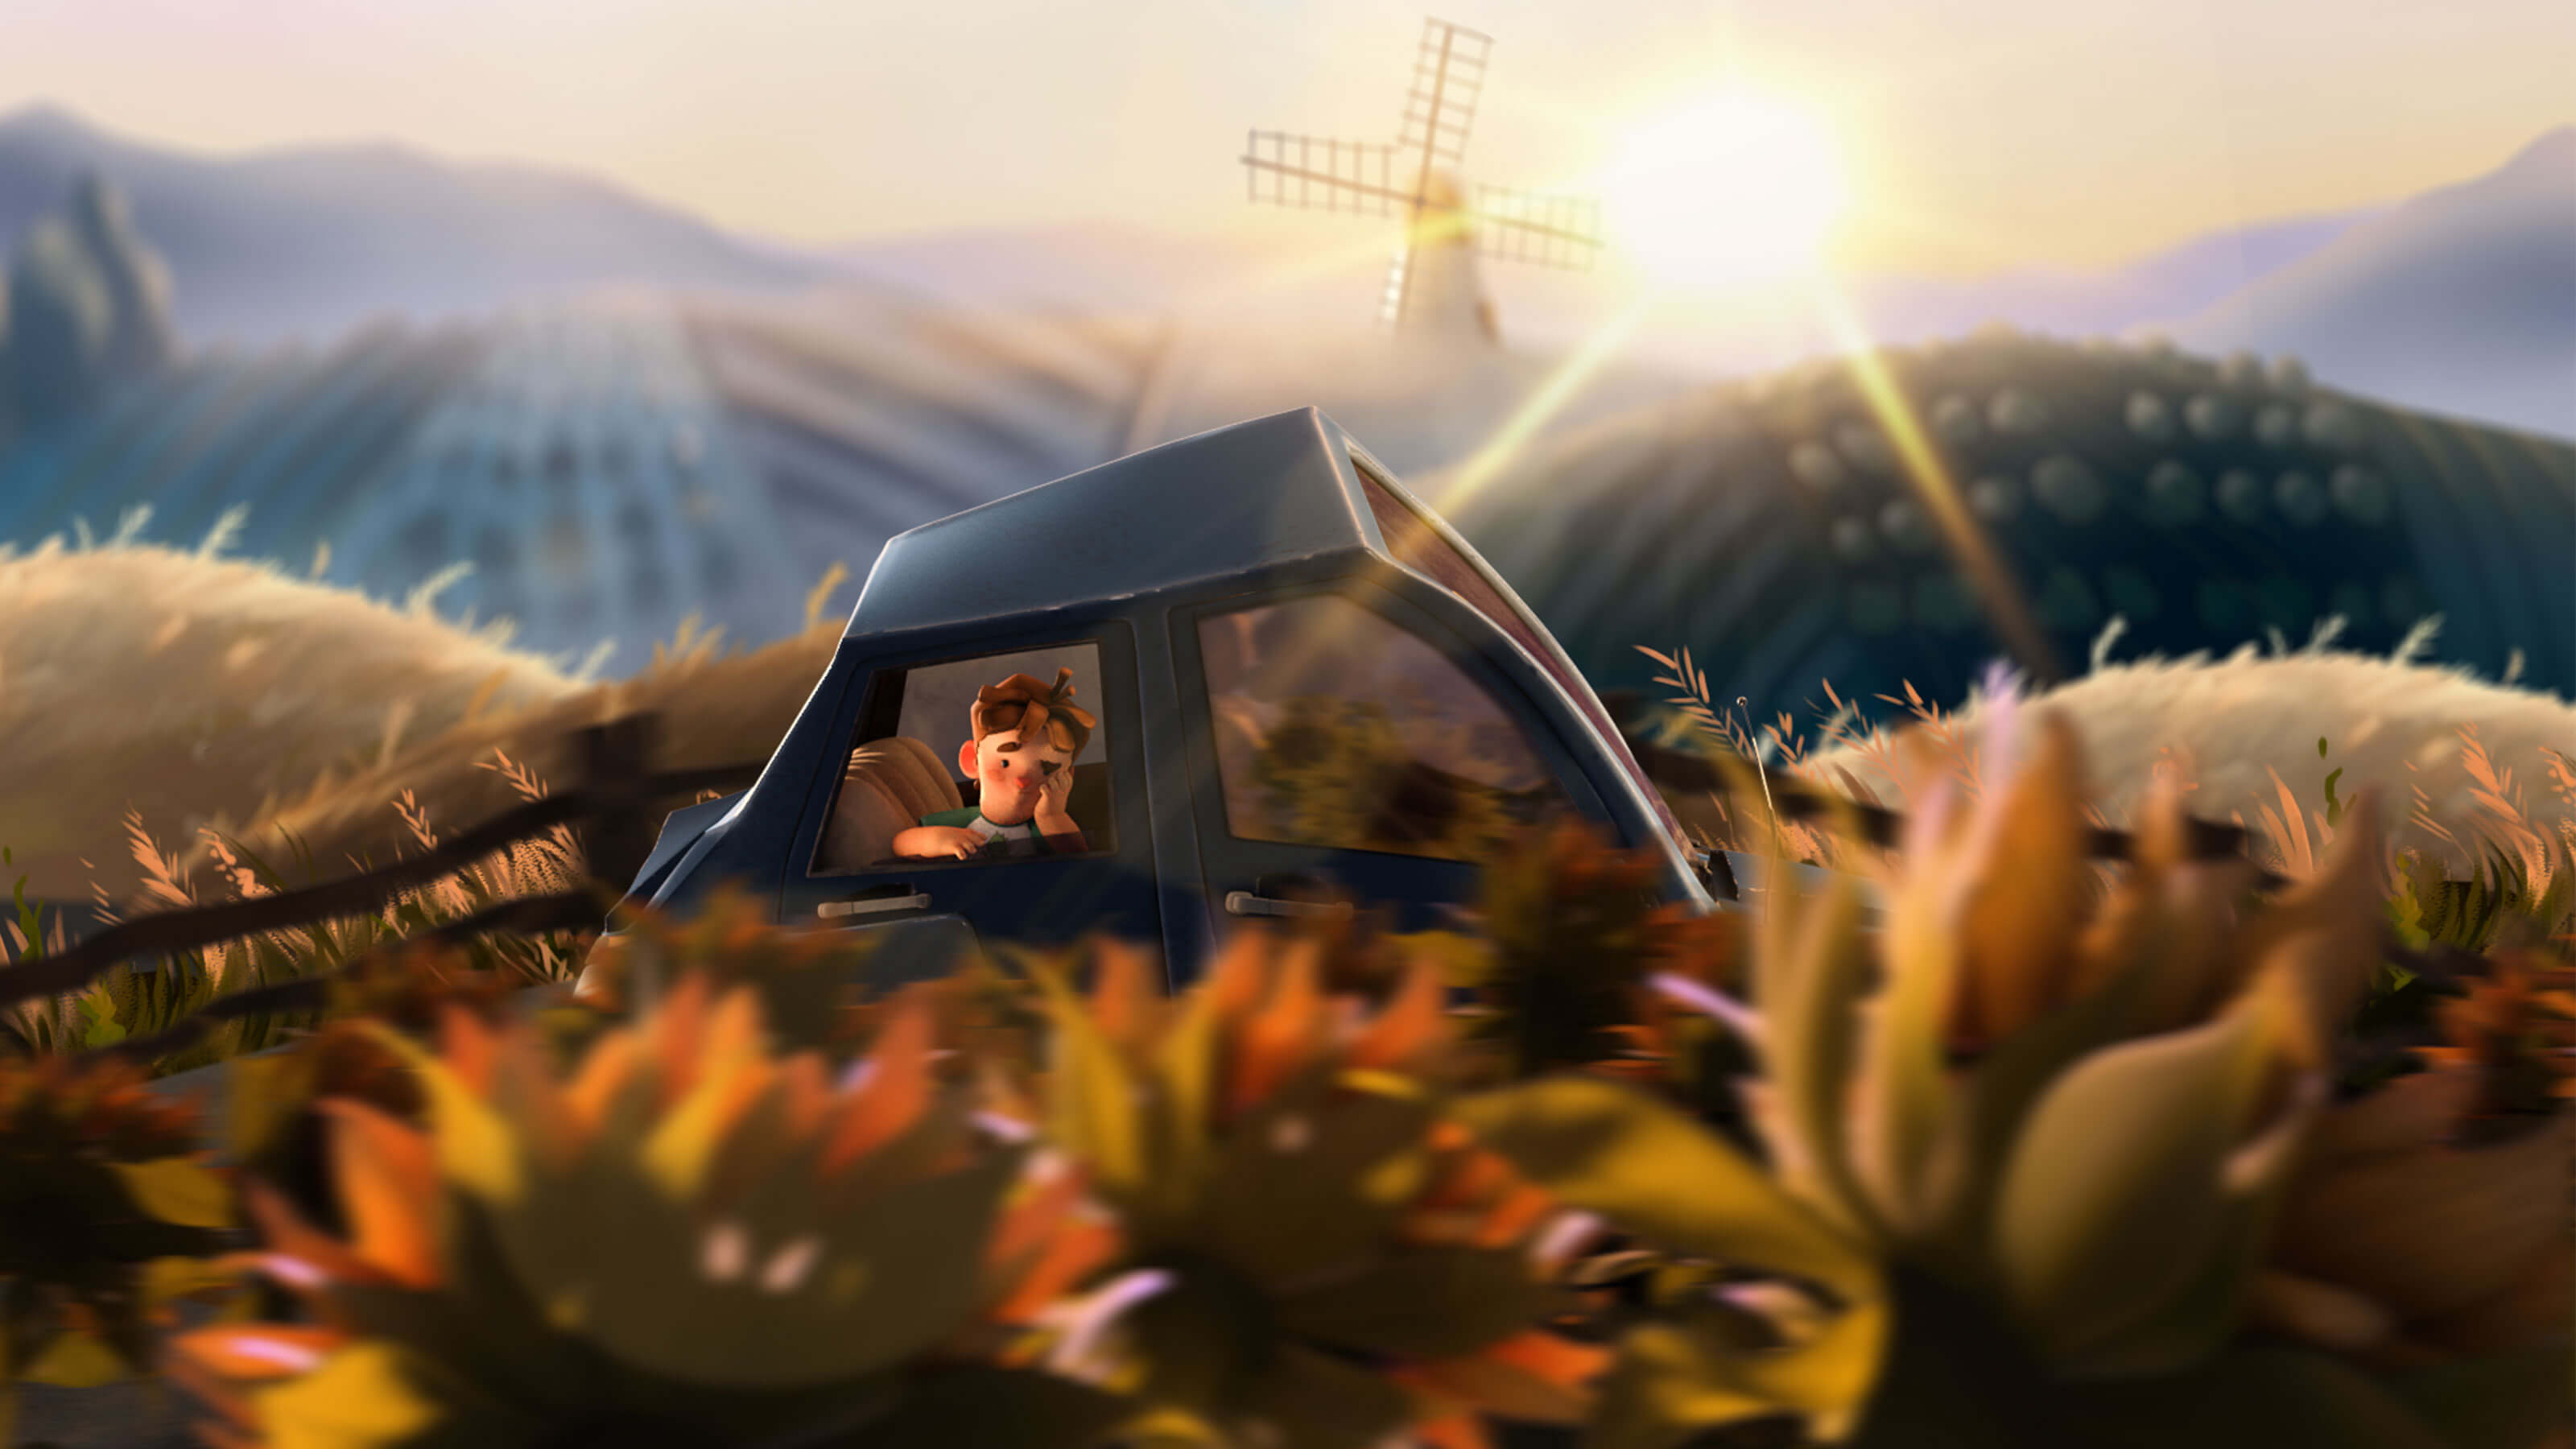 Un niño aburrido mira por la ventana de un automóvil que pasa por una serie de colinas con un molino de viento al fondo.